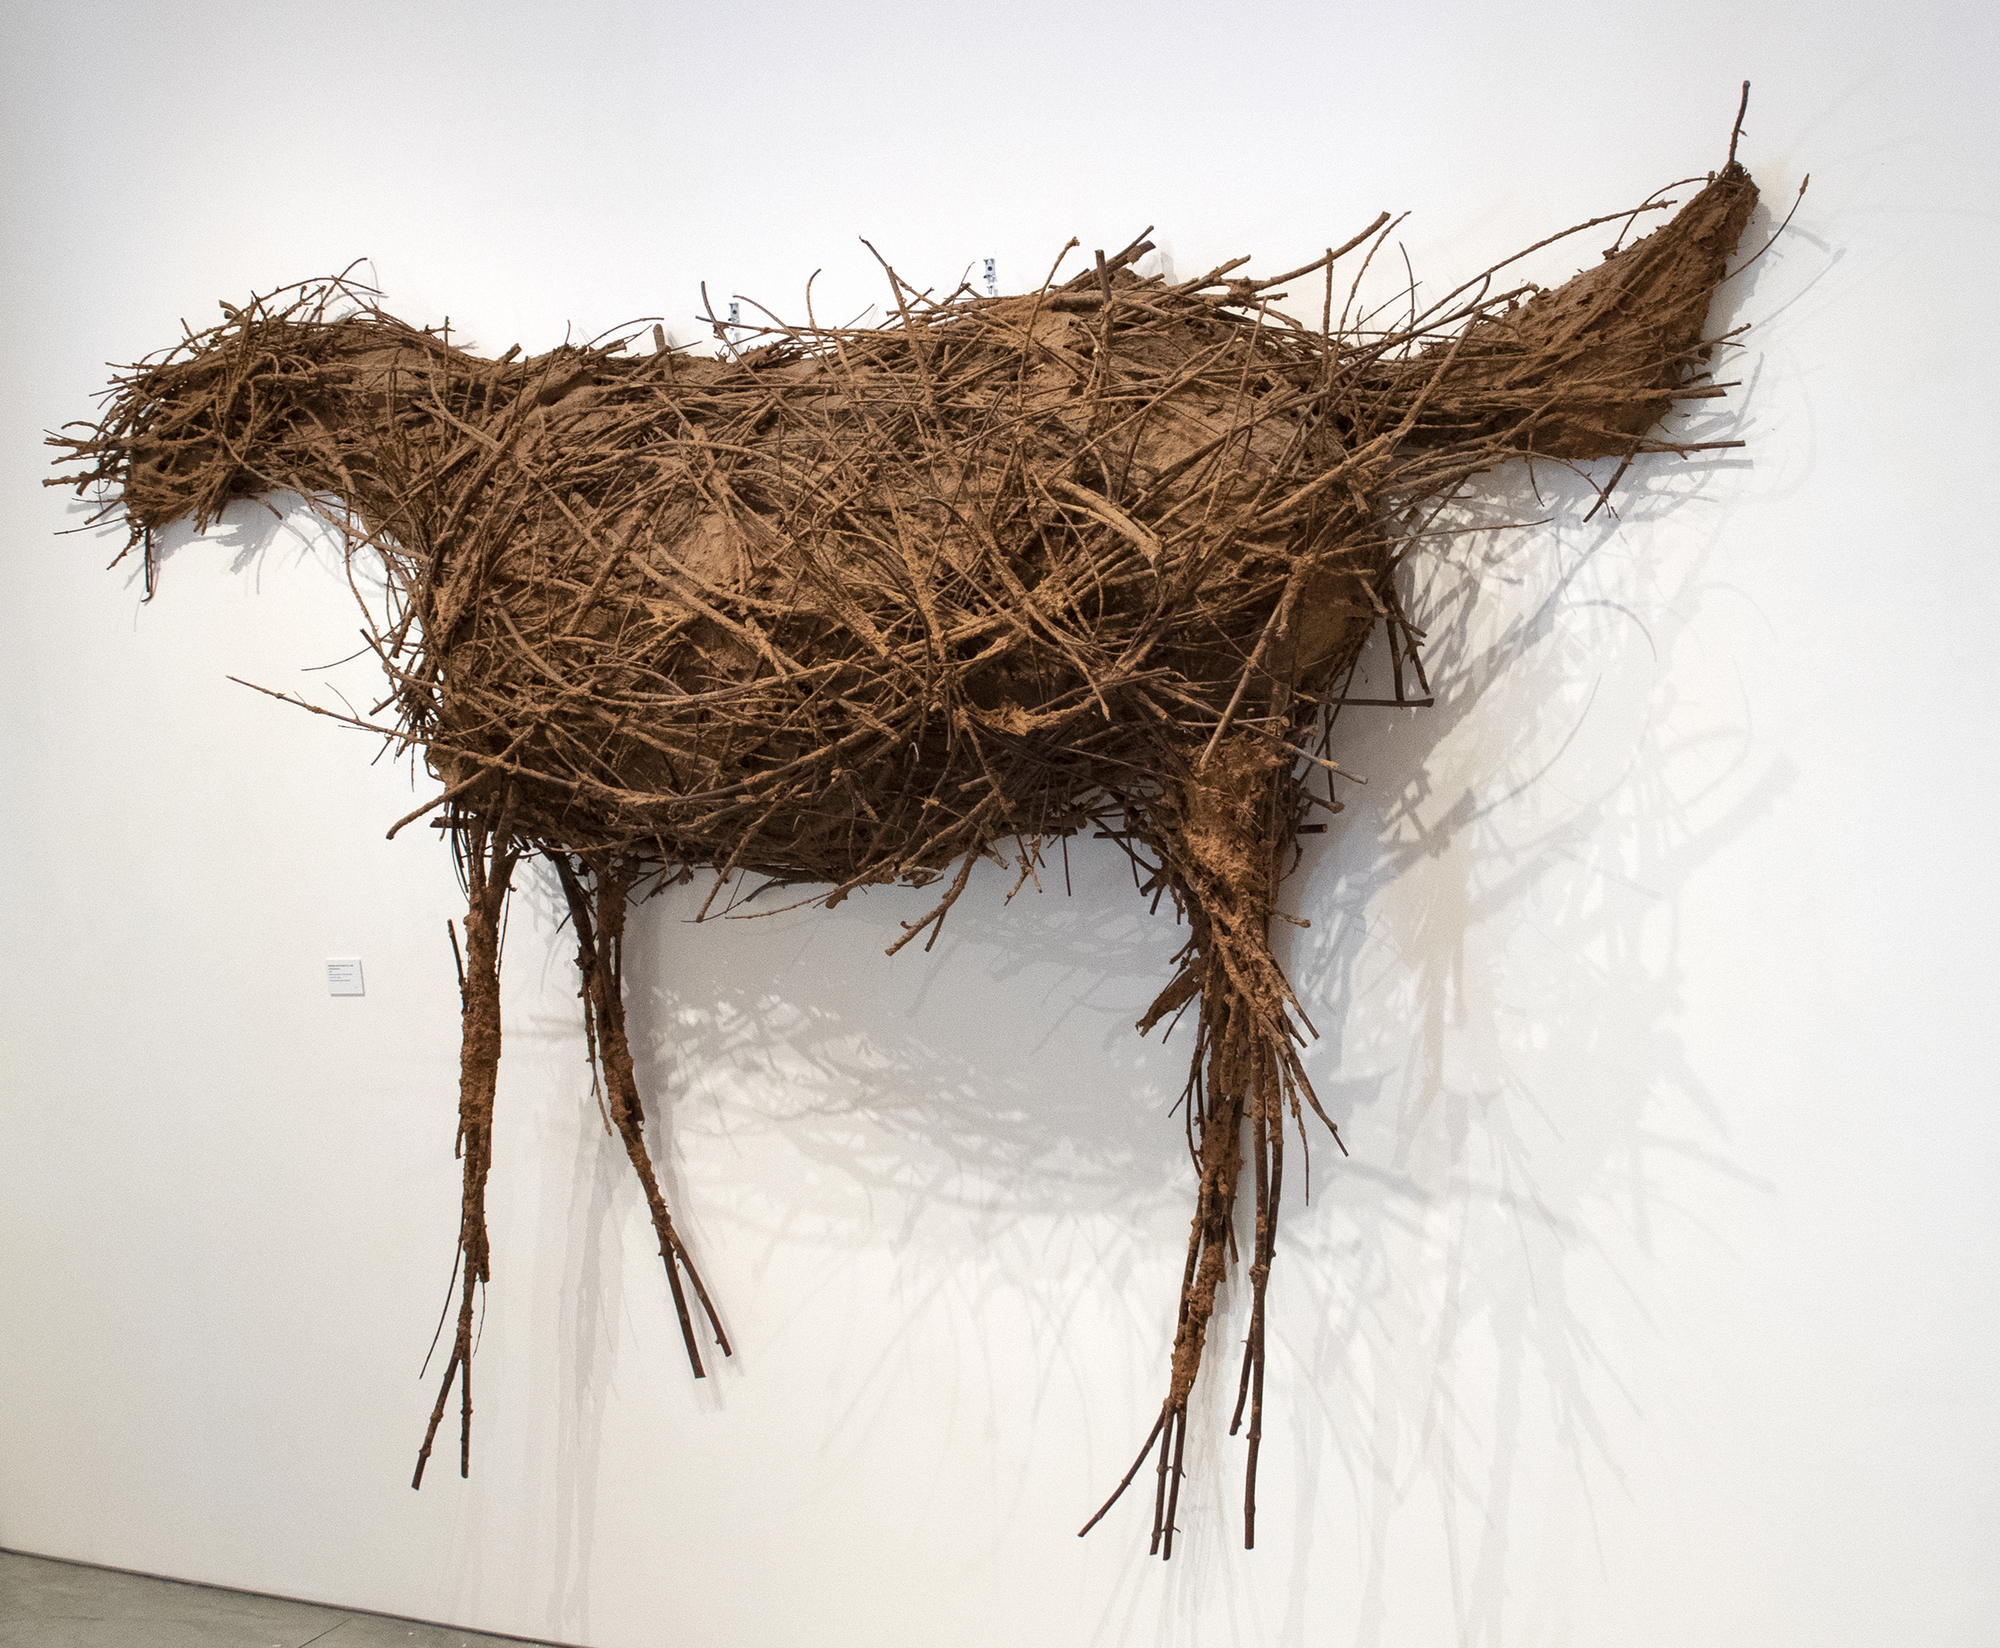 黛博拉·巴特菲尔德是一位美国雕塑家，以她由木材、金属和其他发现物品制成的马匹雕塑而闻名。1981年的作品，无题（马），由木棍和纸在电线骨架。这部作品的令人印象深刻的规模创造了一个显着的效果，提出了巴特菲尔德的著名题材的一个引人注目的例子。巴特菲尔德最初用她在蒙大拿州博兹曼的房产上找到的木材和其他材料来制作马，并将这些马视为一个比喻性的自画像，挖掘了这些形式的情感共鸣。